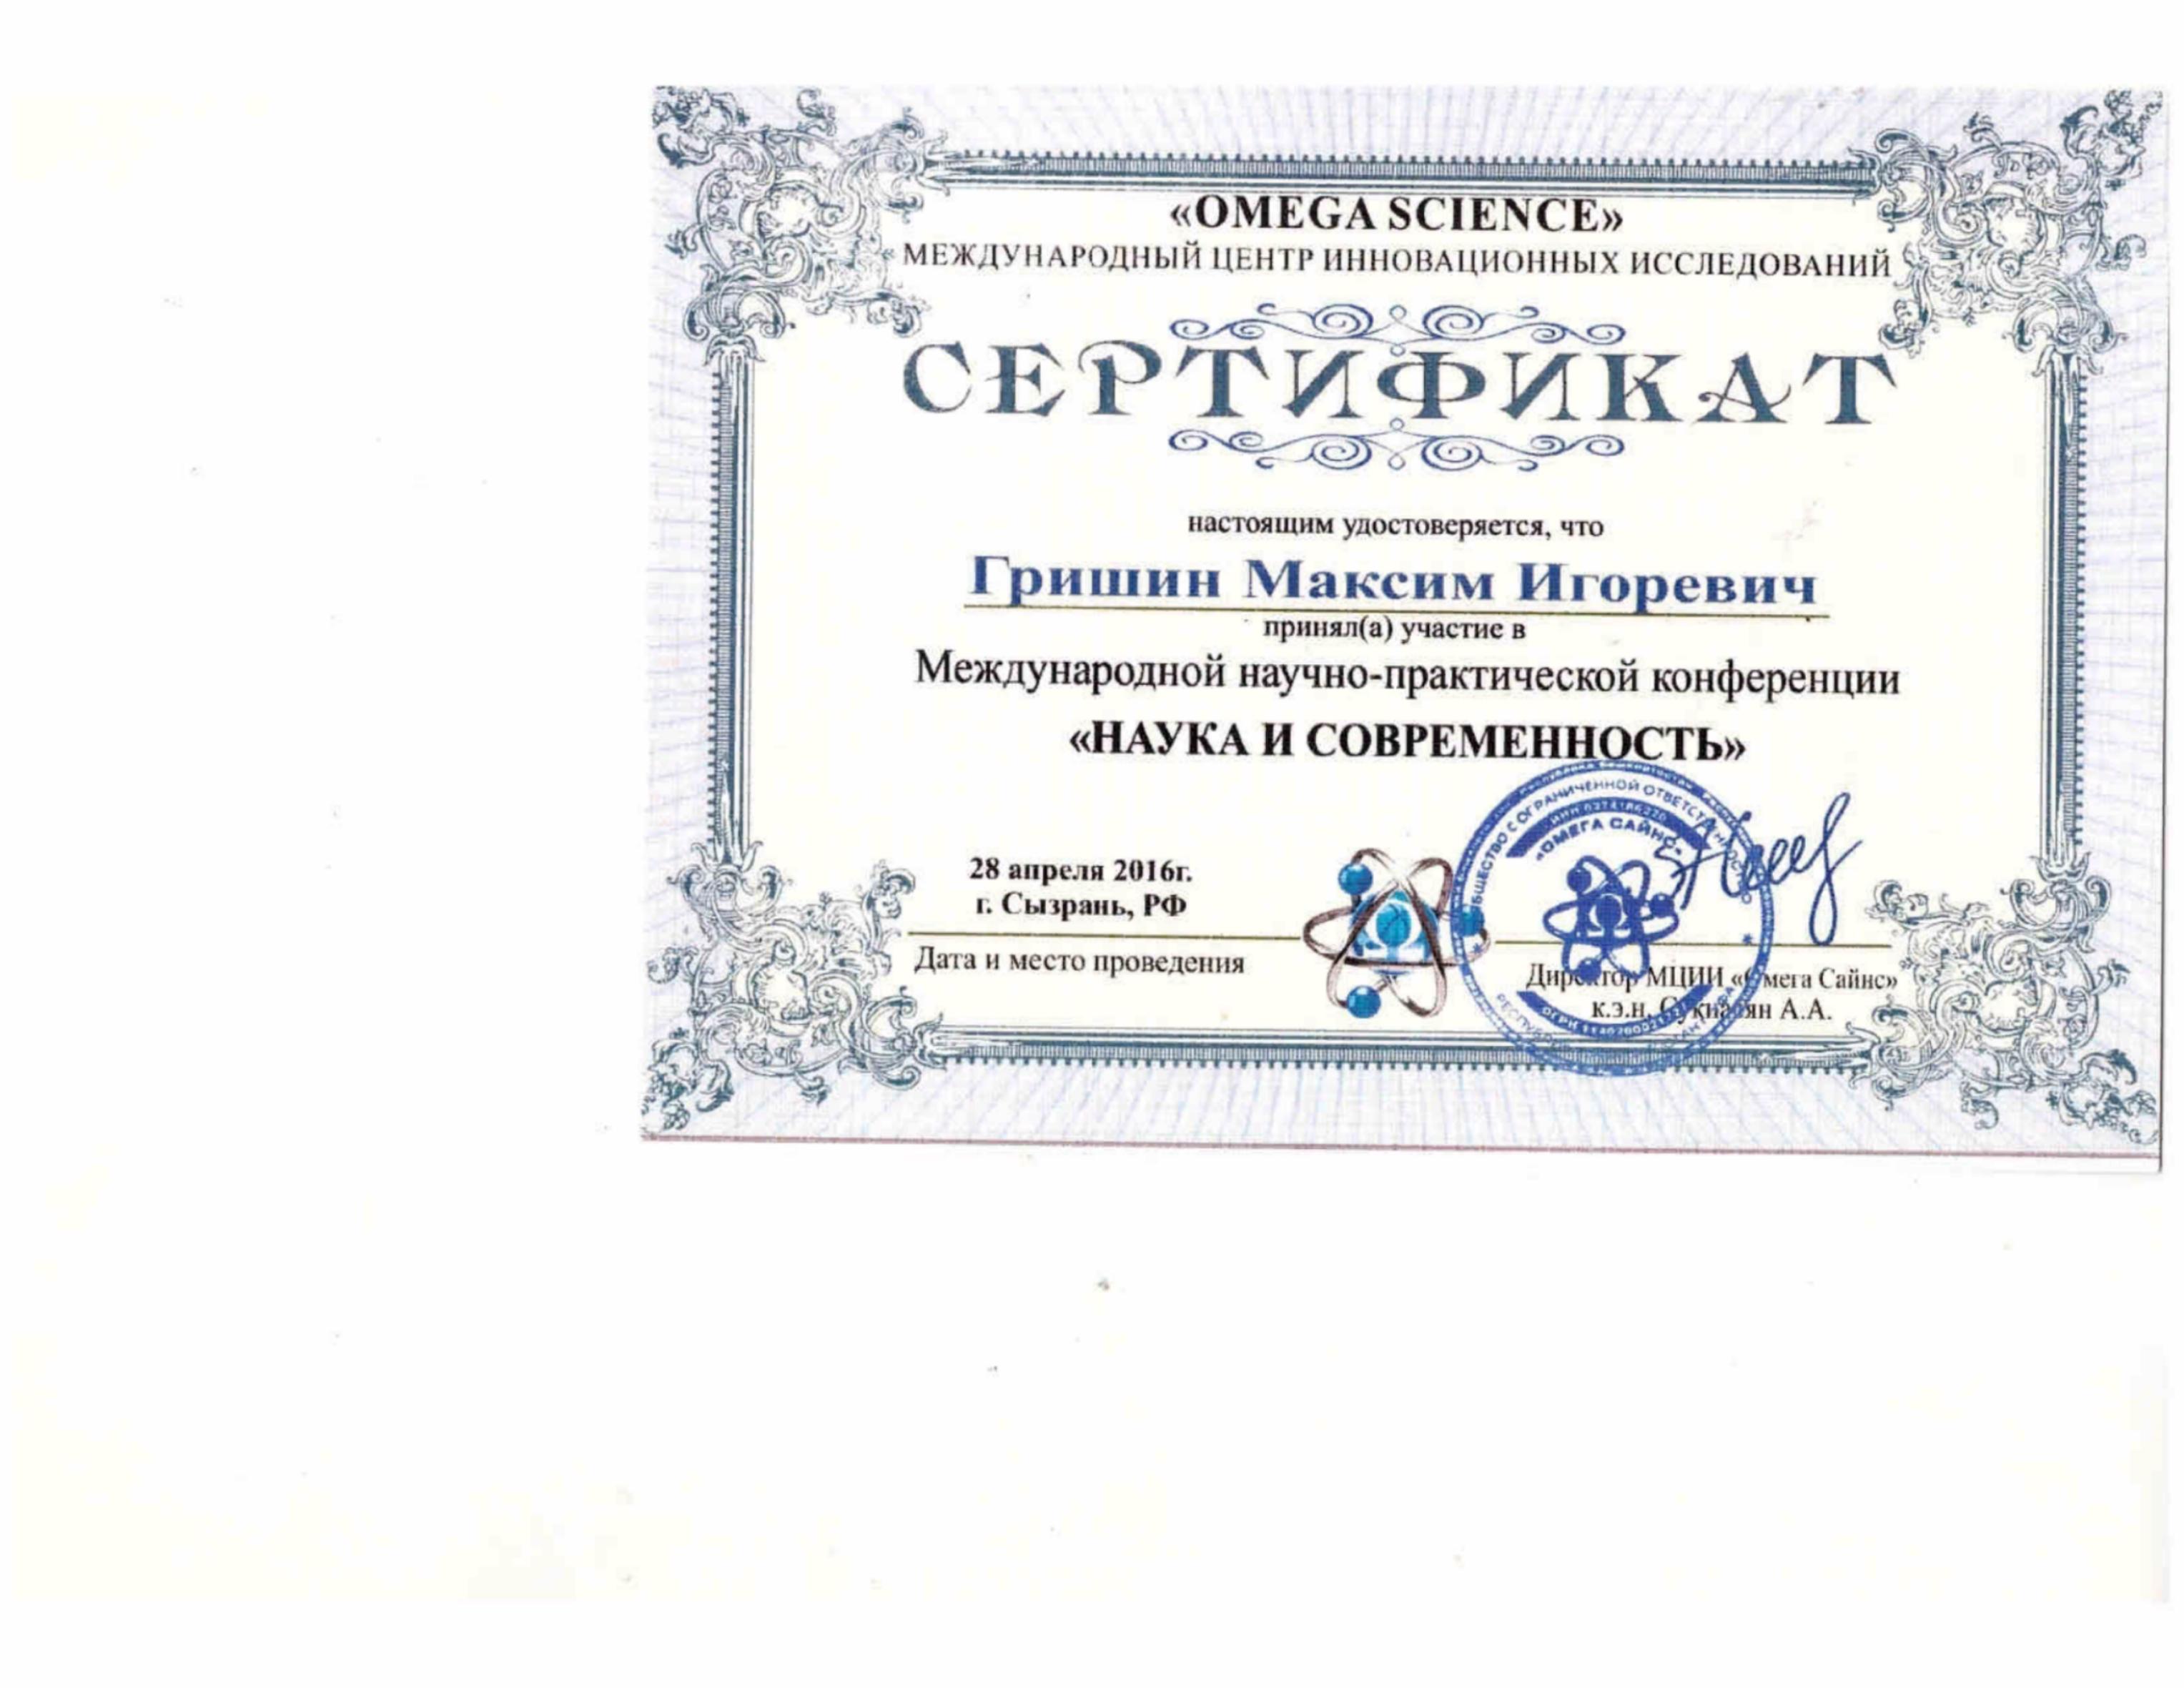 Сертификацы и лицензии Гришин Максим Игоревич